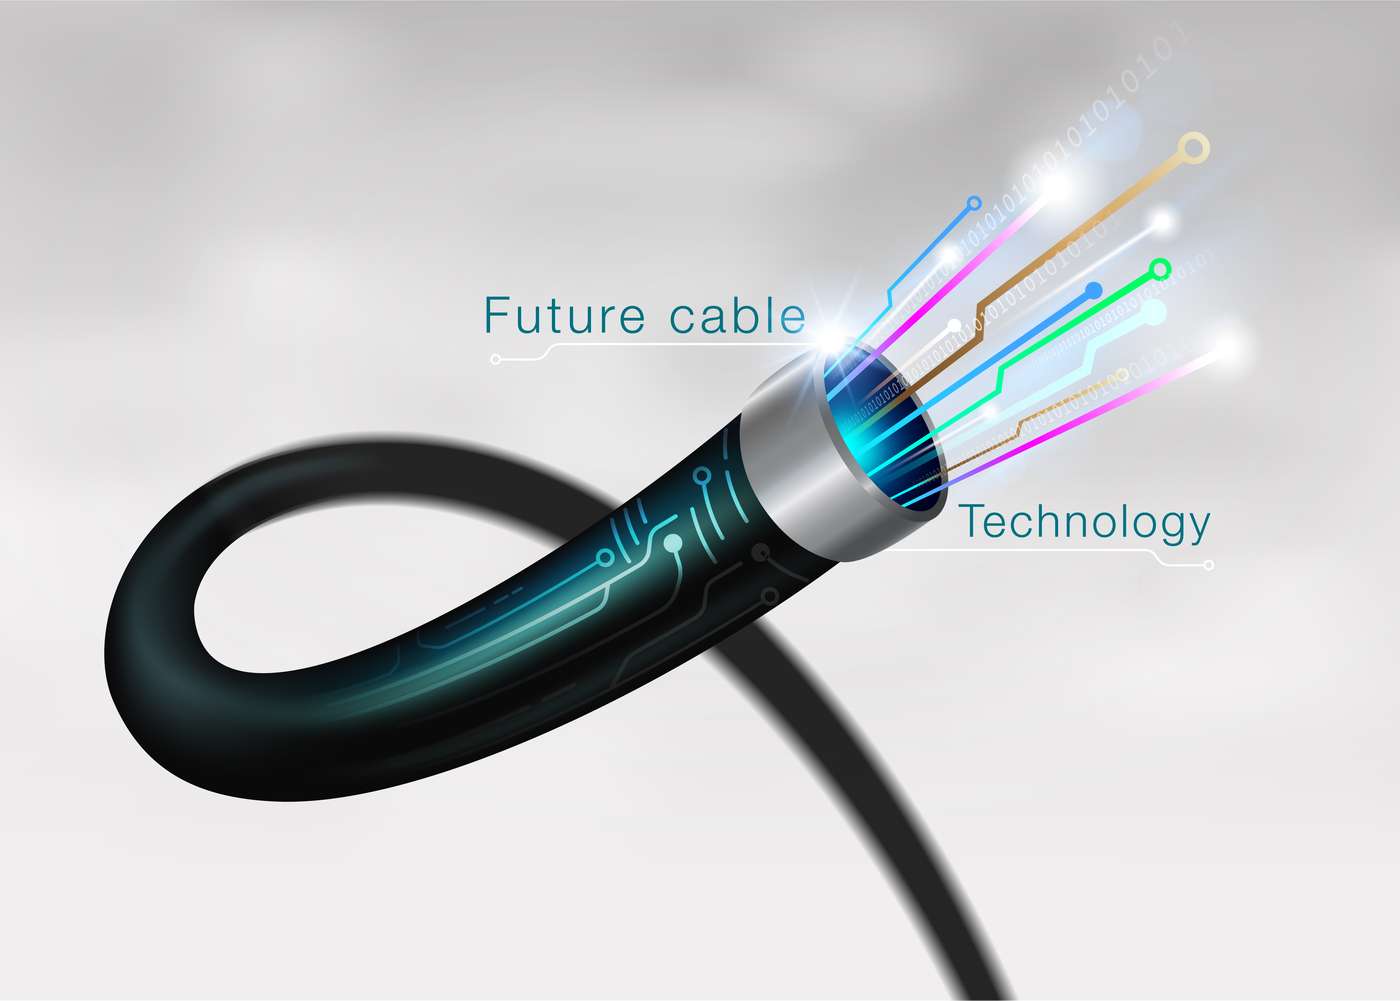 Introducing A1 Fiber Cables